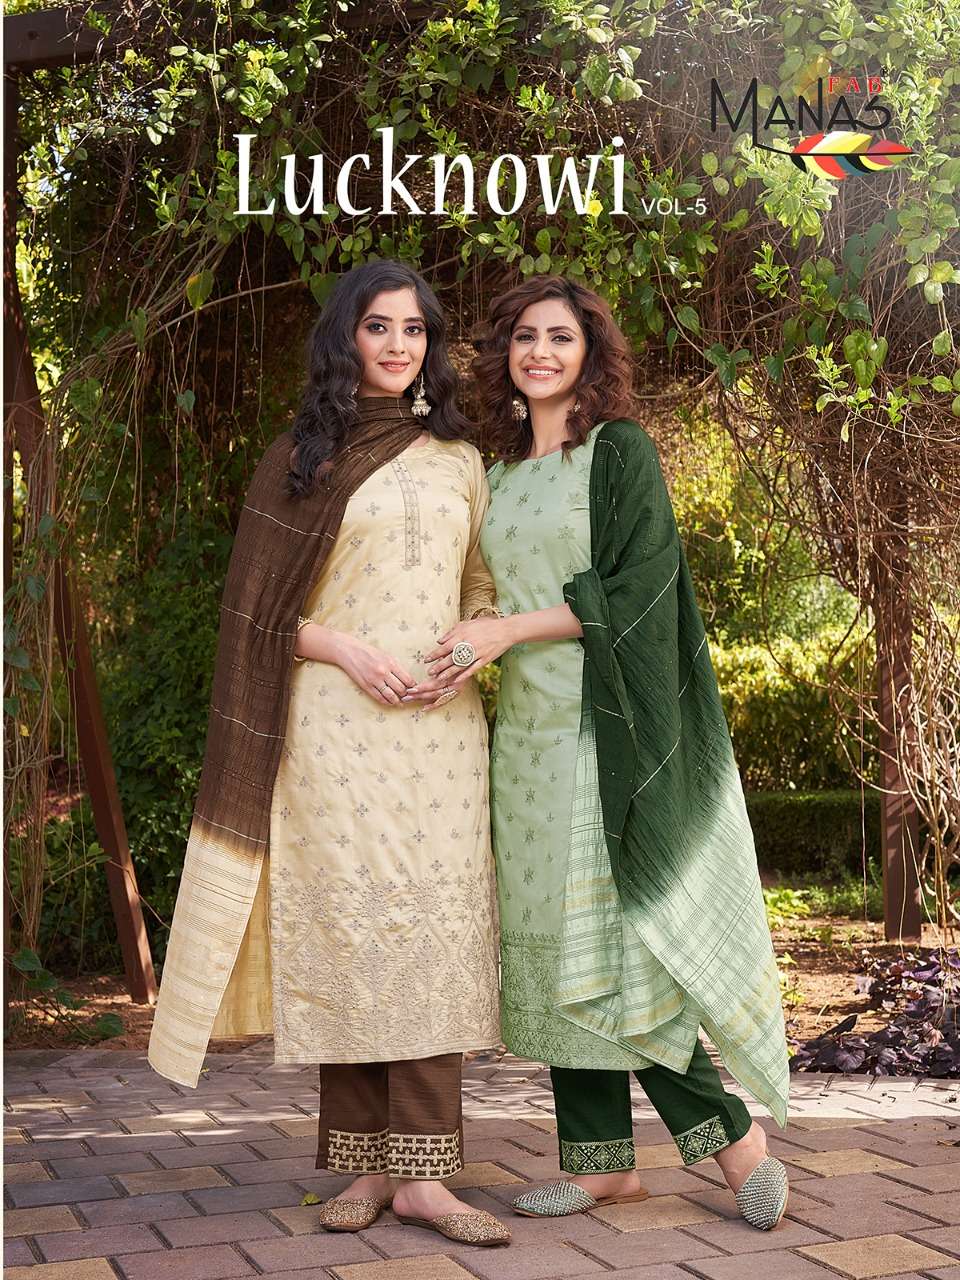 Lucknowi Vol 5 By Manas Fab Wholesale Online Lowest Price Kurtis Pant Dupatta Set